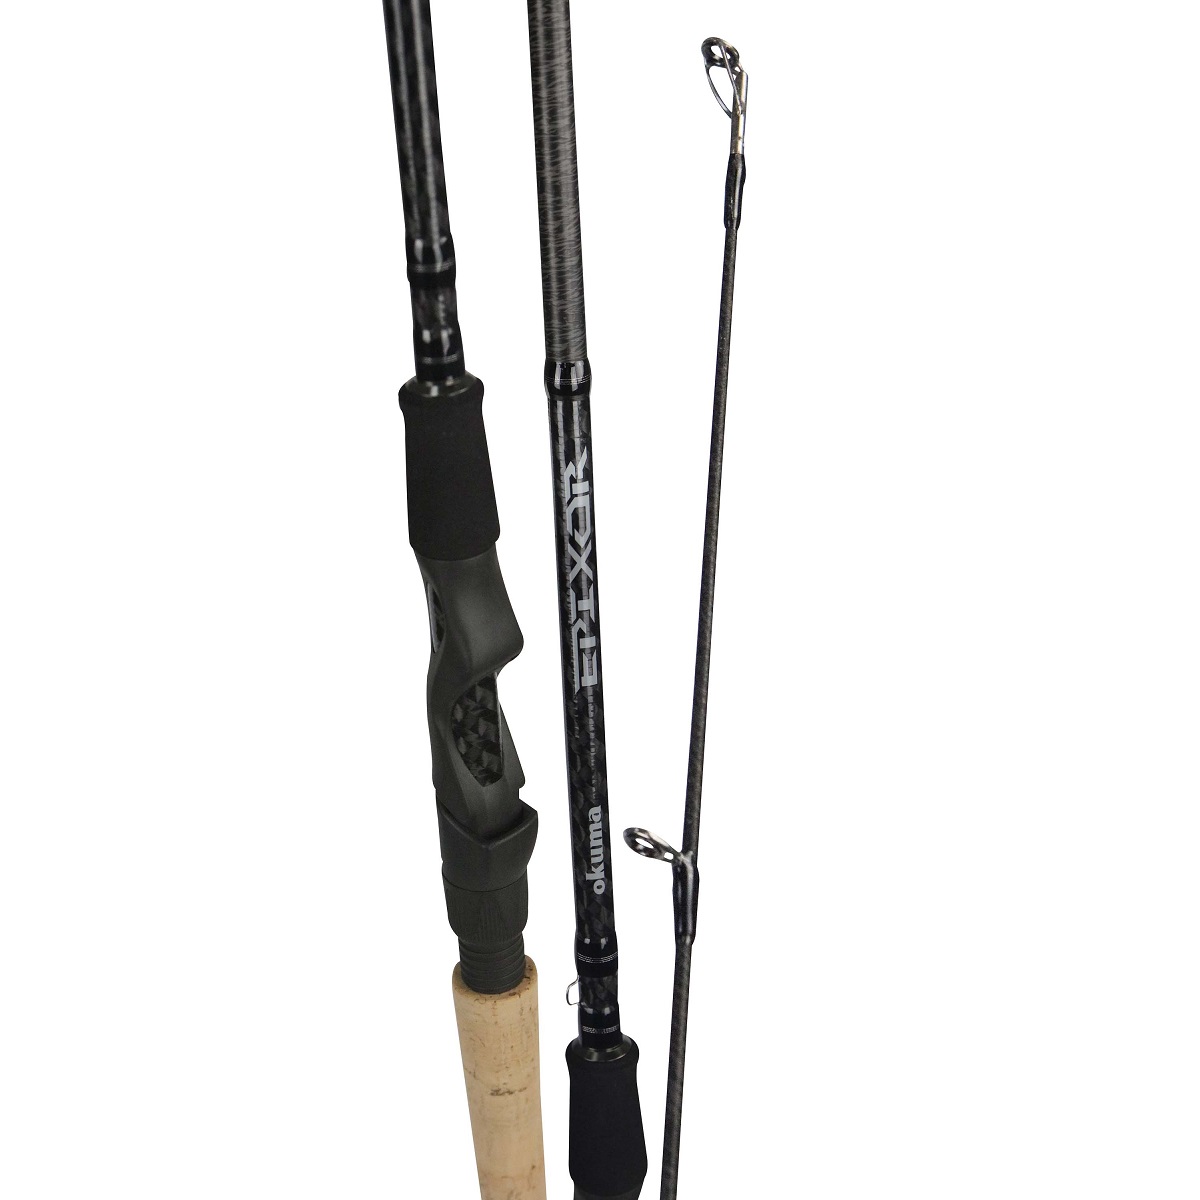 Epixor Rod  OKUMA Fishing Rods and Reels - OKUMA FISHING TACKLE